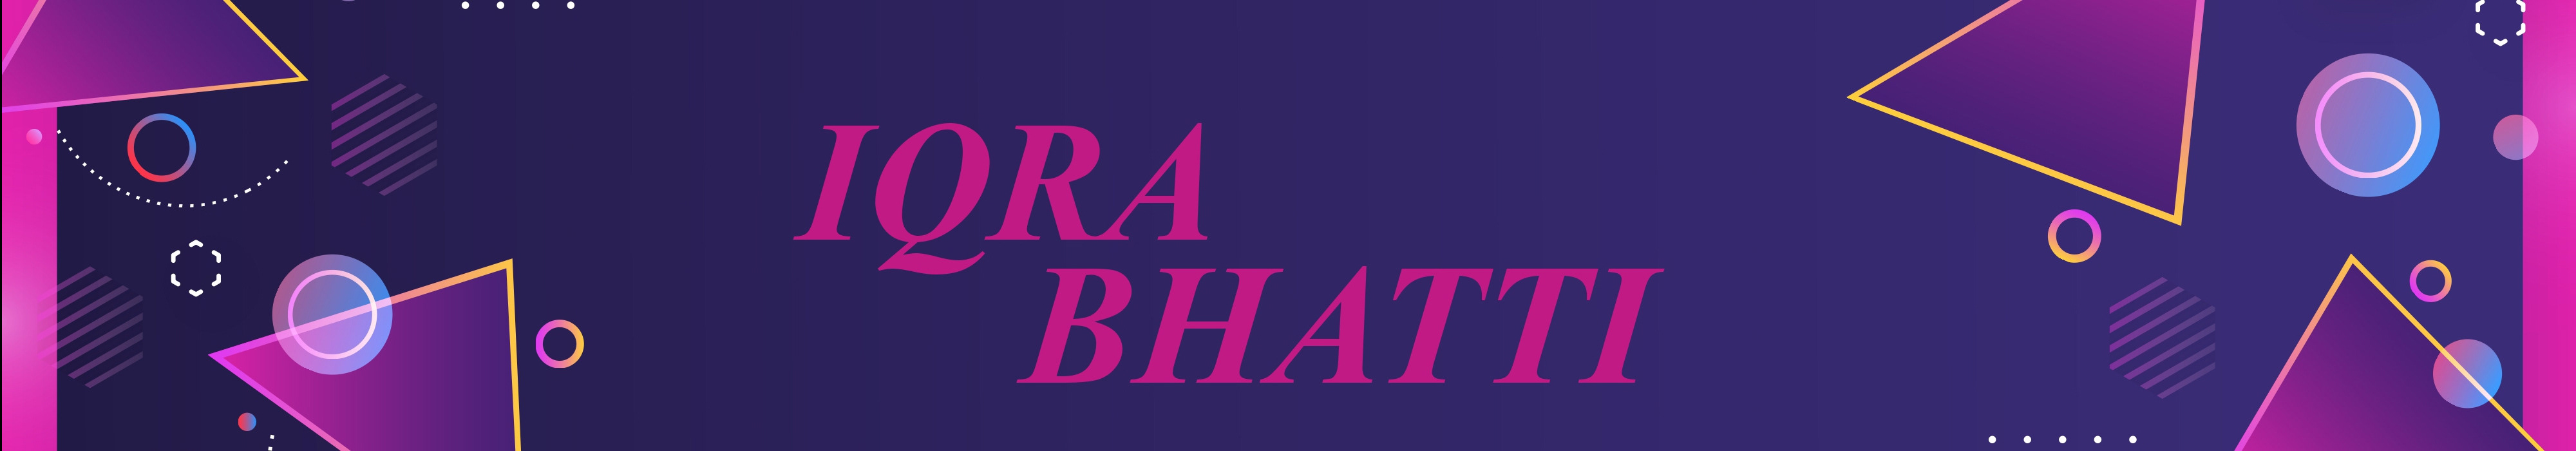 iqra bhatti のプロファイルバナー